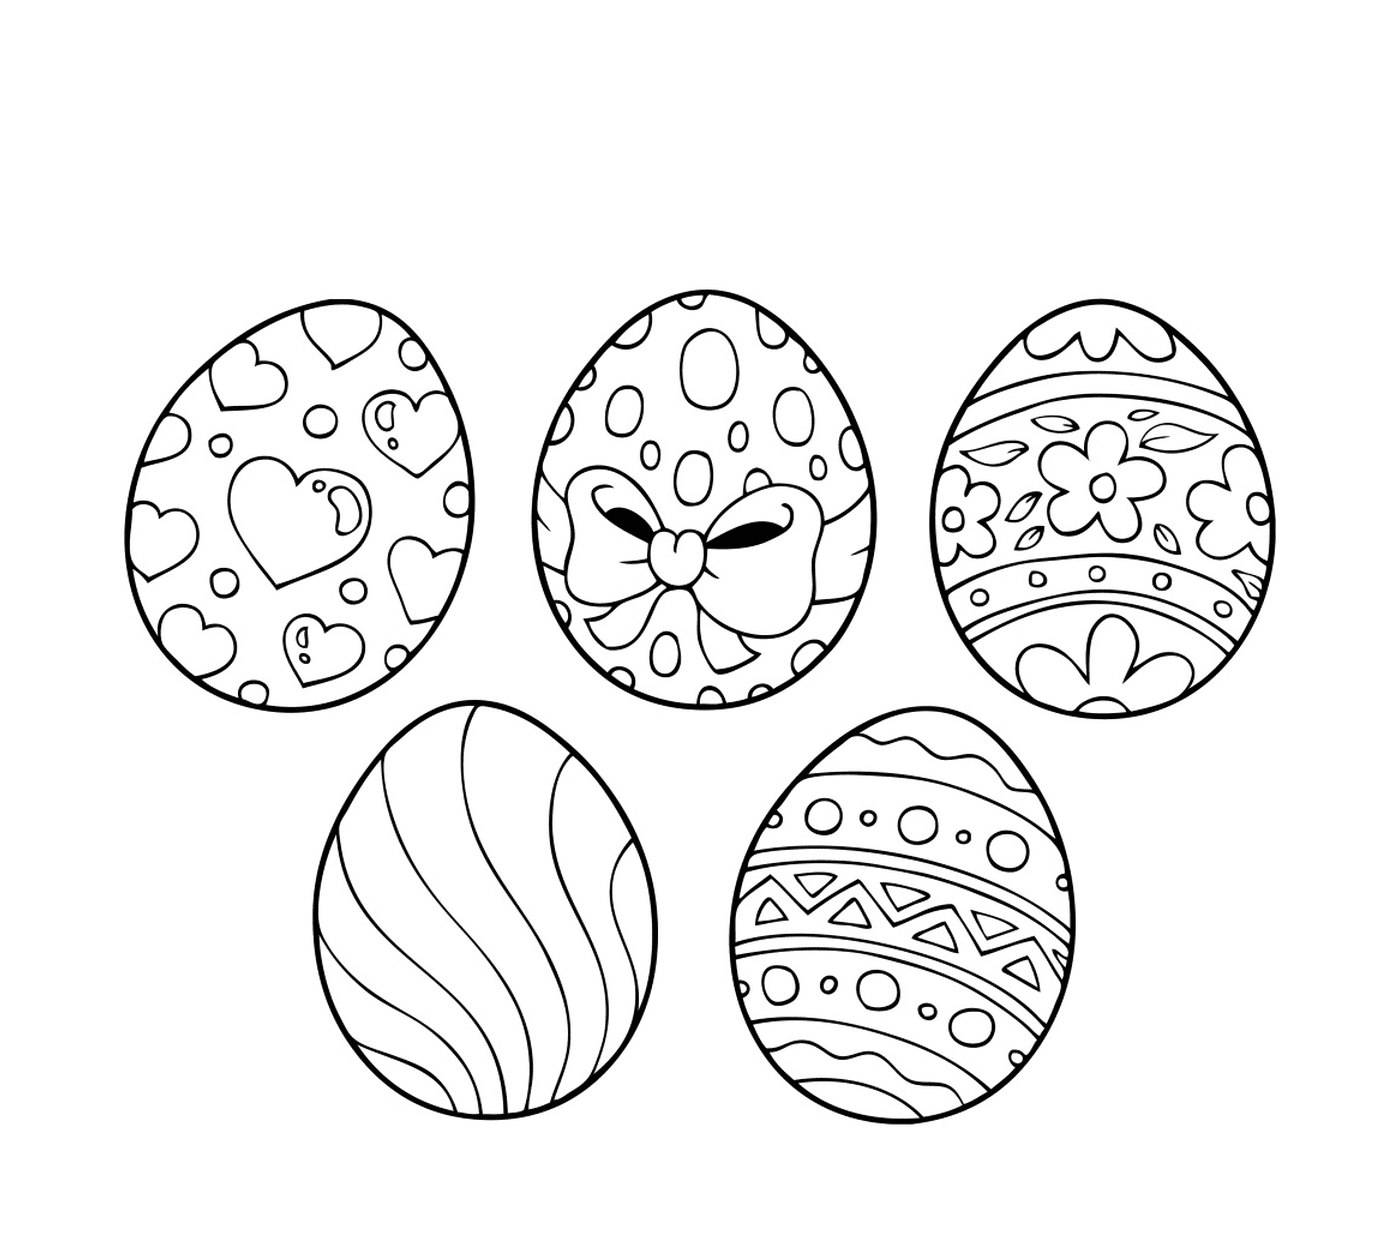   Œufs de Pâques 2017, un ensemble d'œufs de Pâques décorés avec différents motifs 